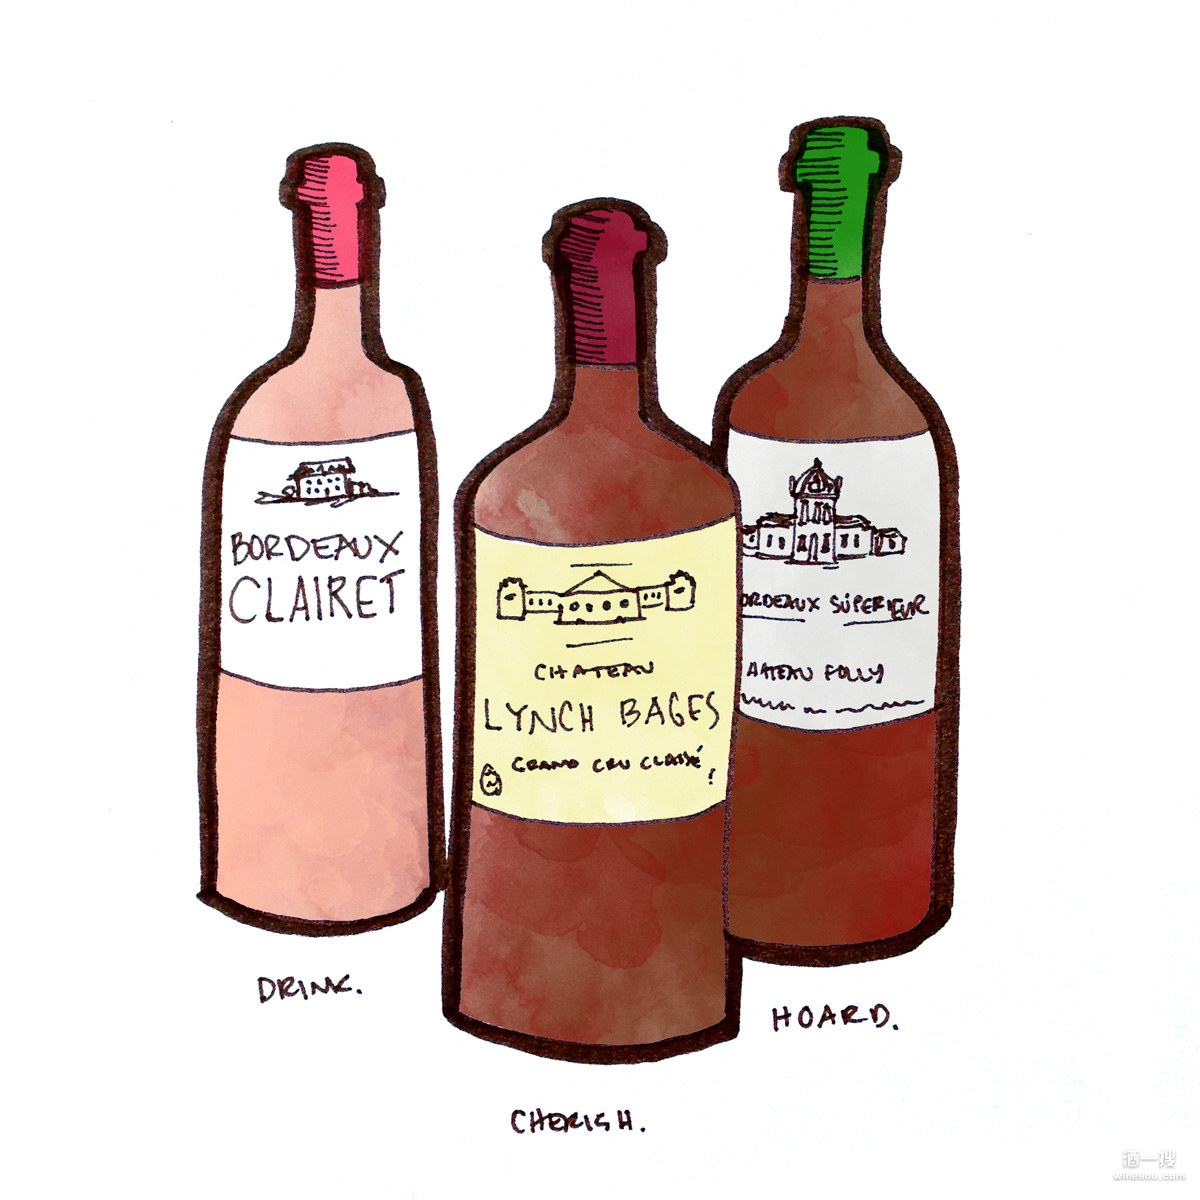 2015年份葡萄酒